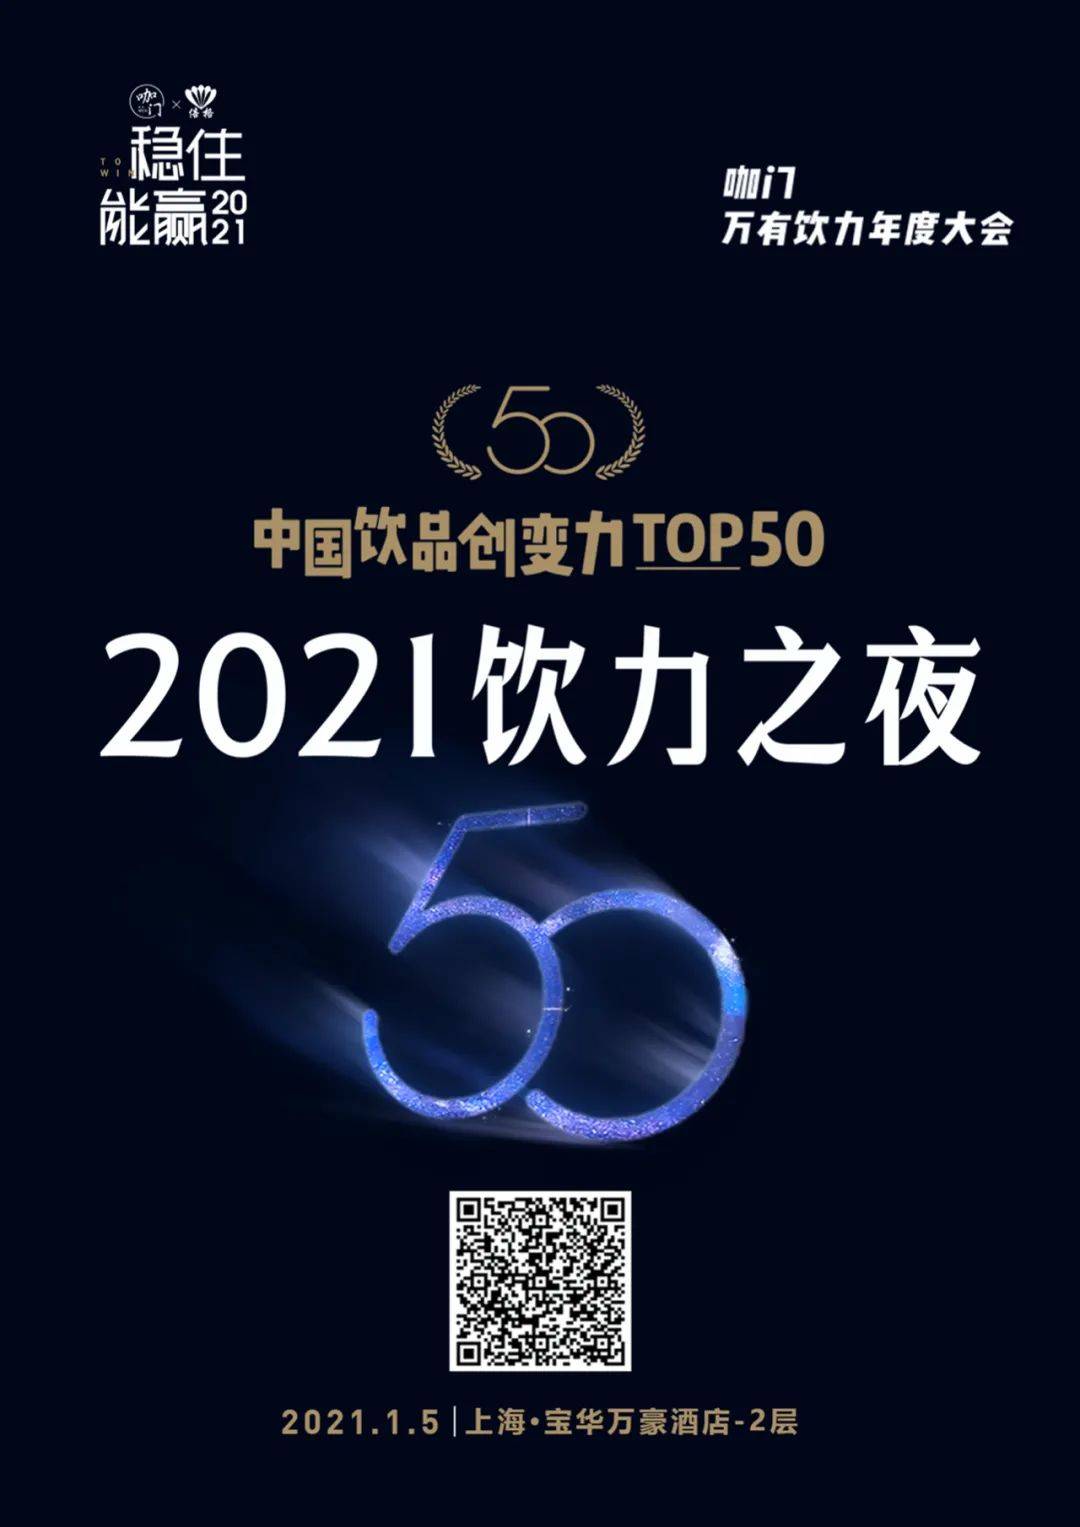 投票ing！中国饮品创变力TOP50评选正在进行